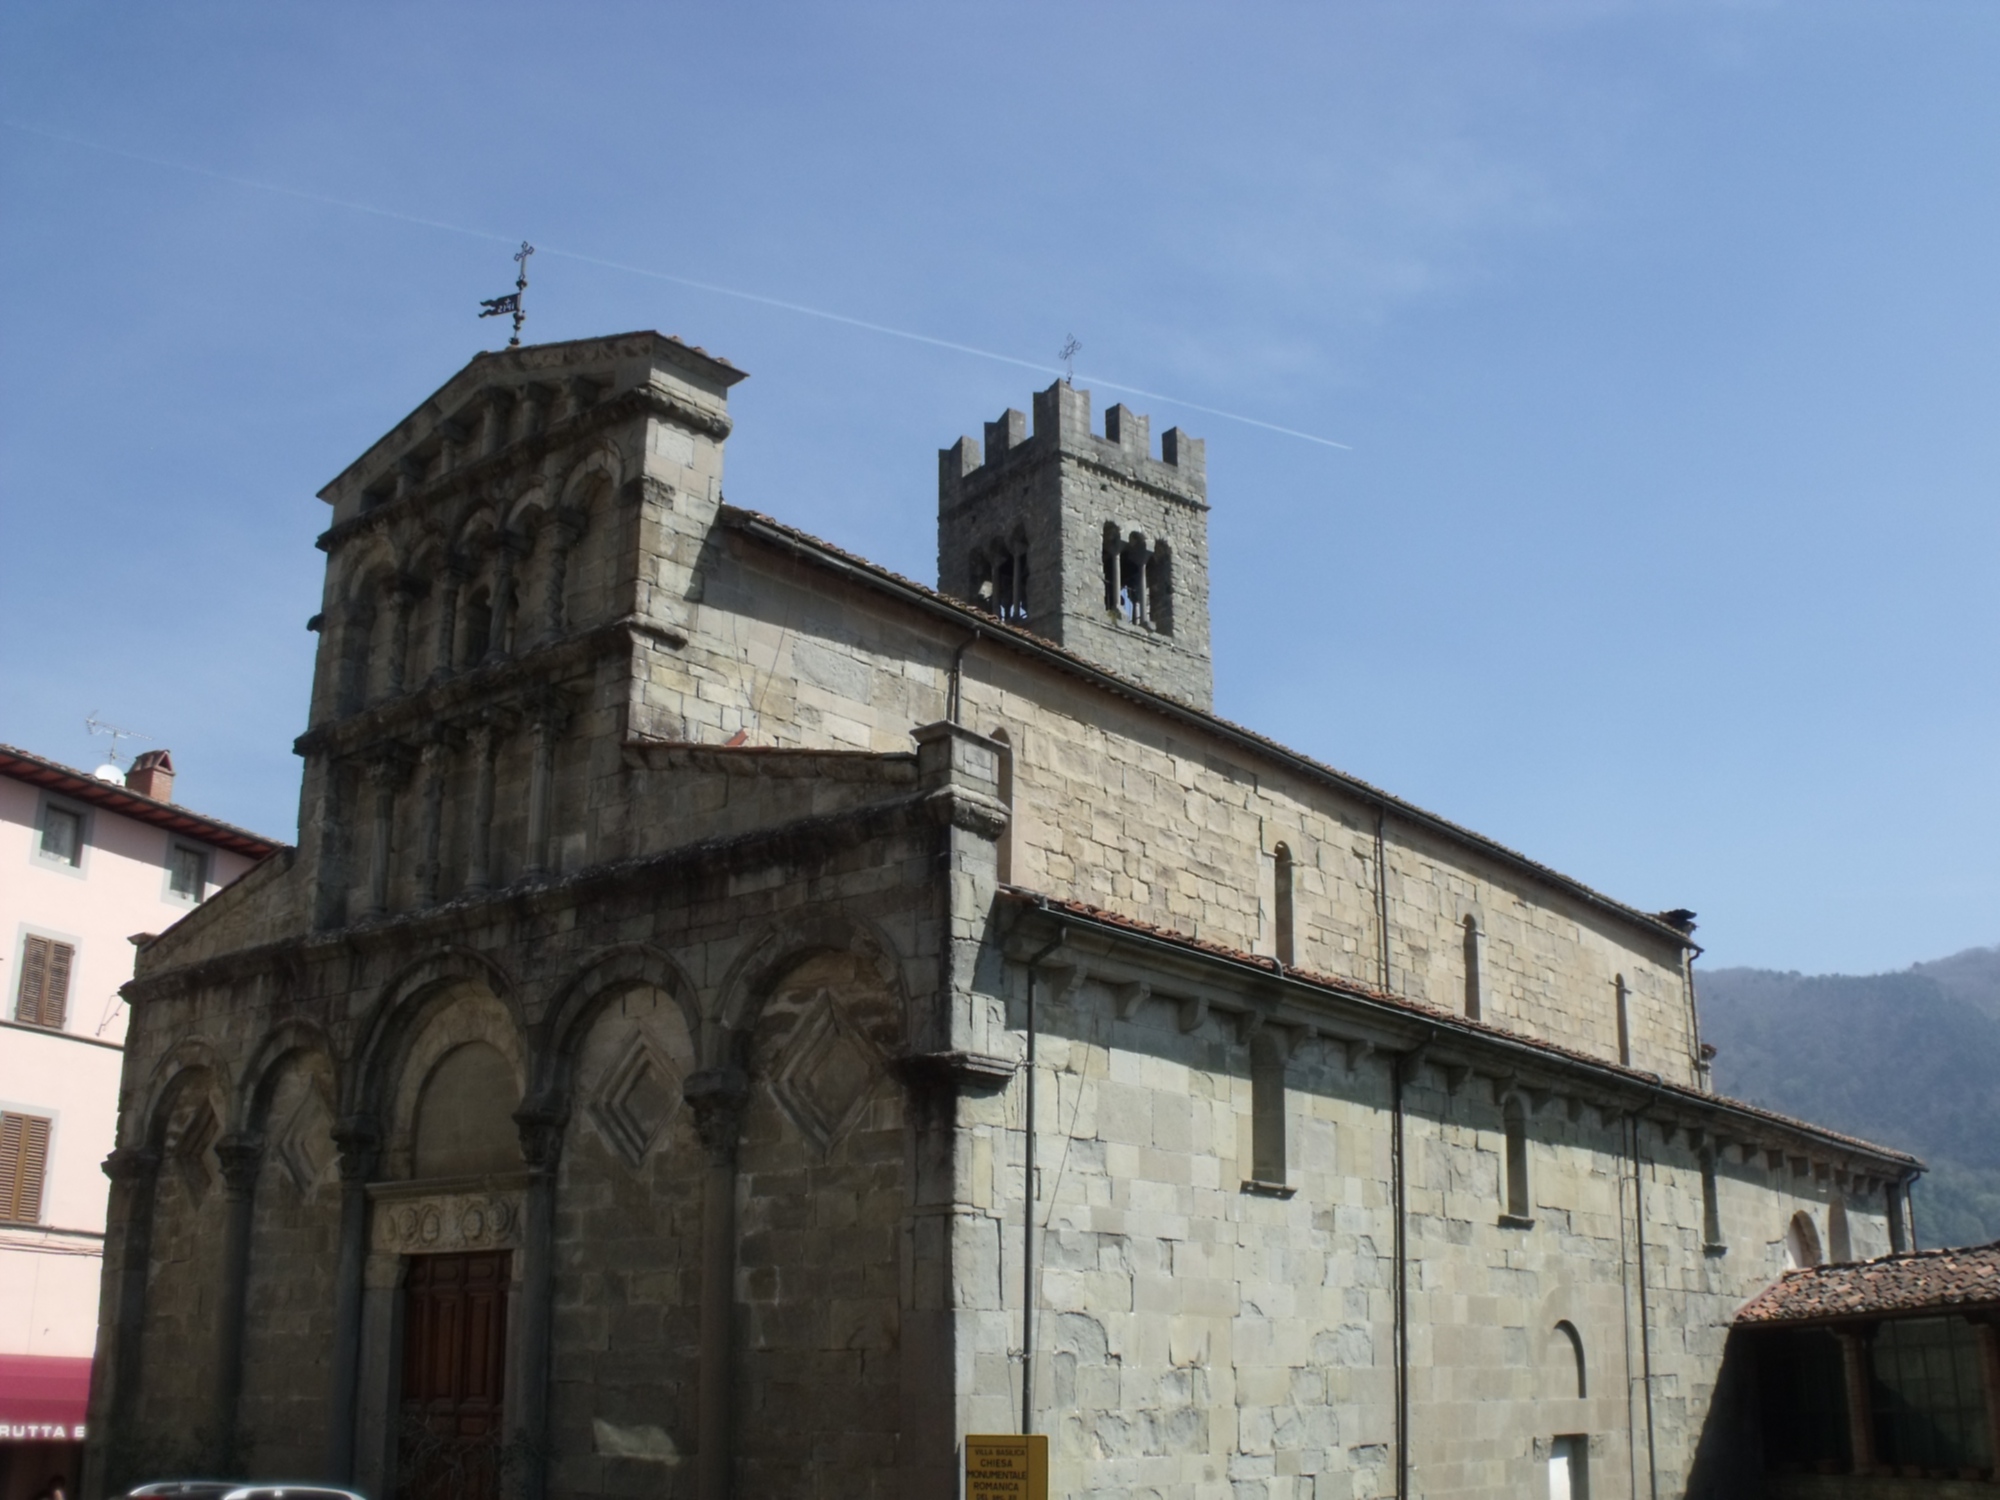 Pieve Santa Maria Assunta, Villa Basilica